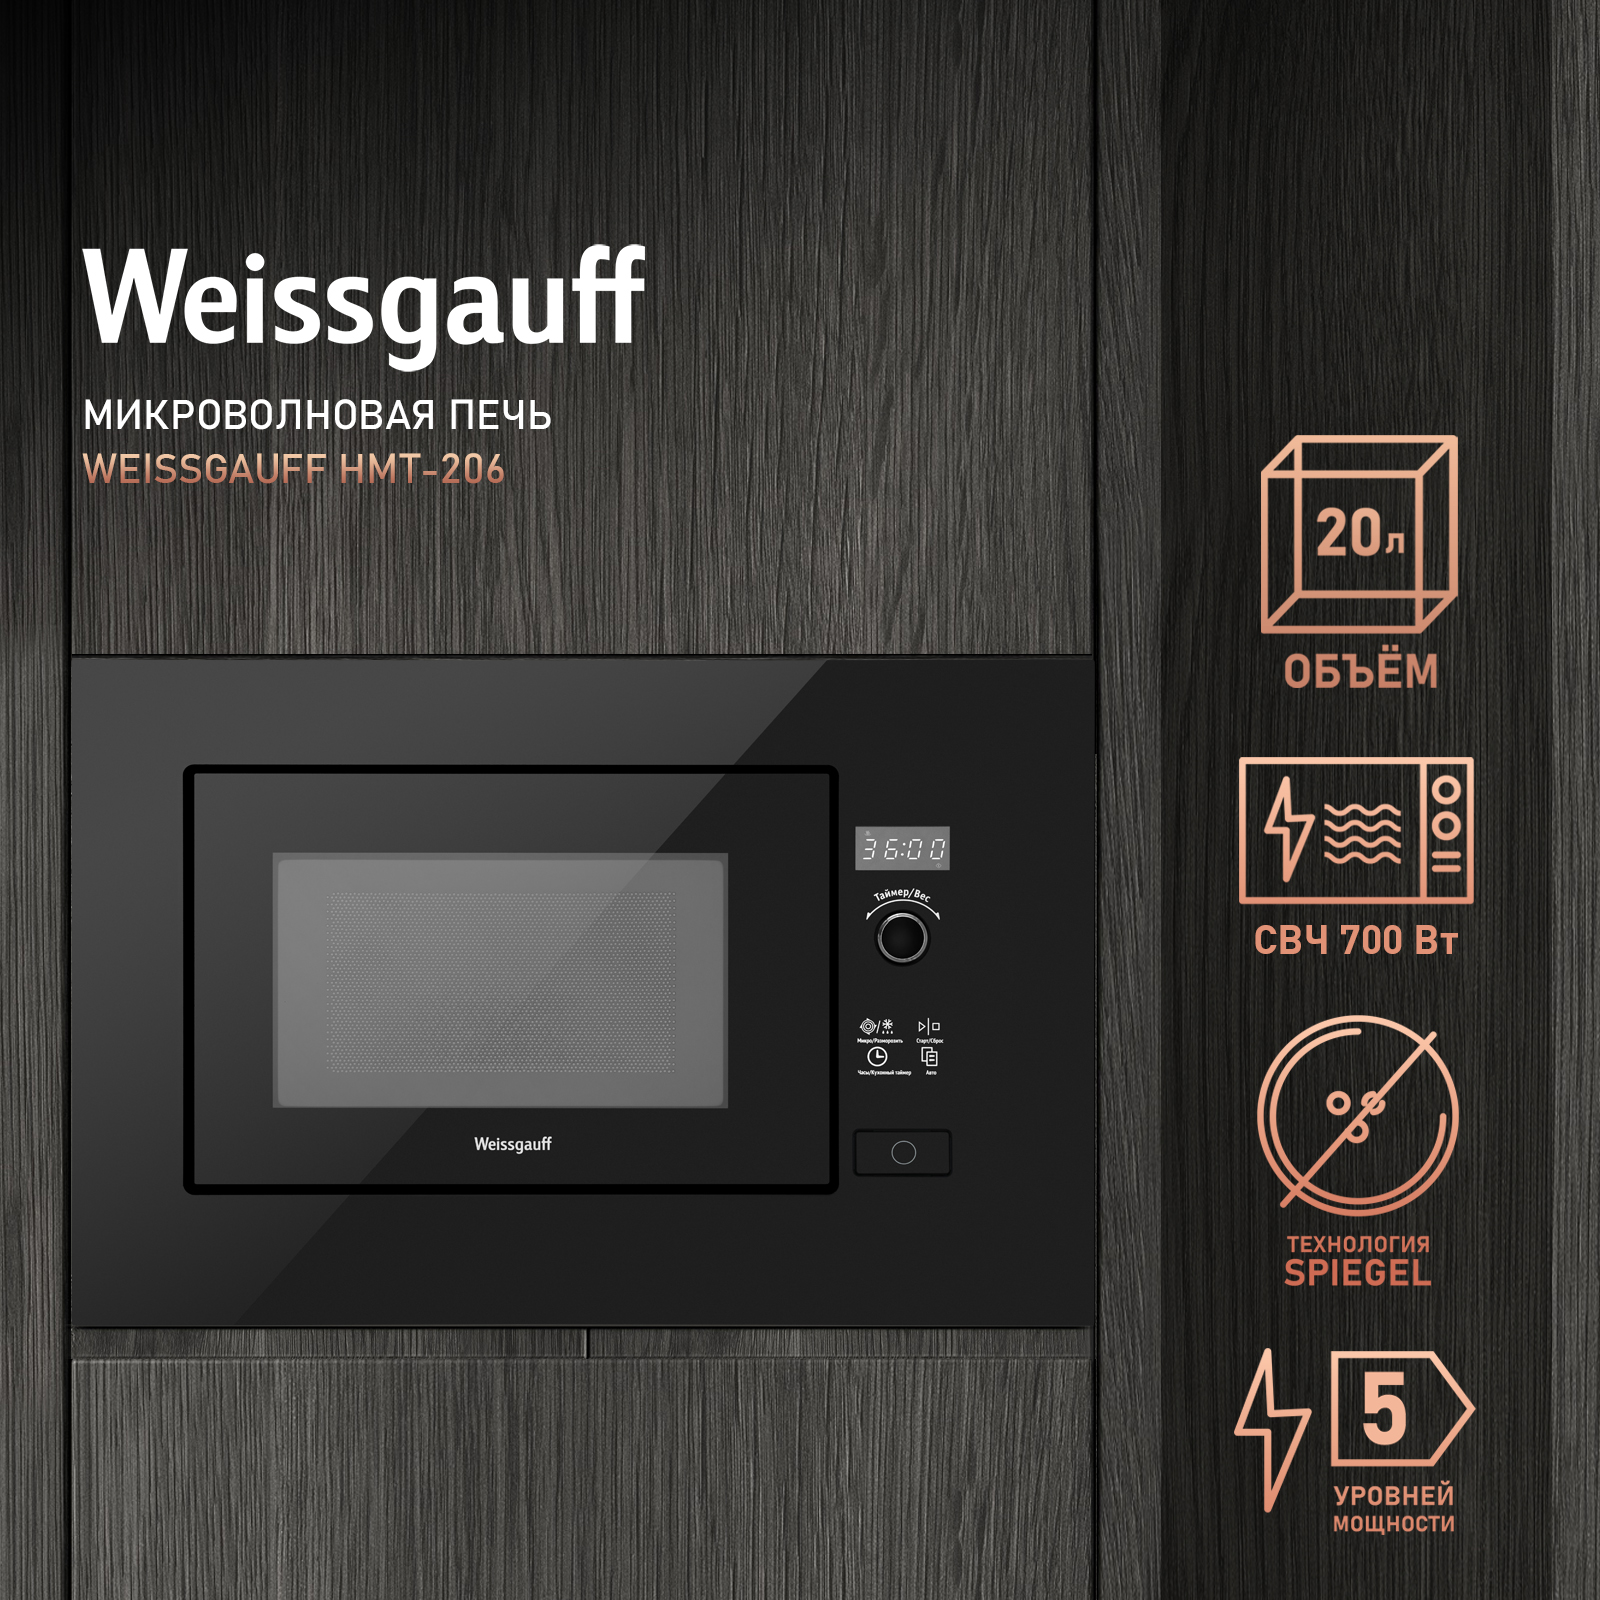 Встраиваемая микроволновая печь Weissgauff HMT-206 Black встраиваемая микроволновая печь weissgauff hmt 206 compact grill черная